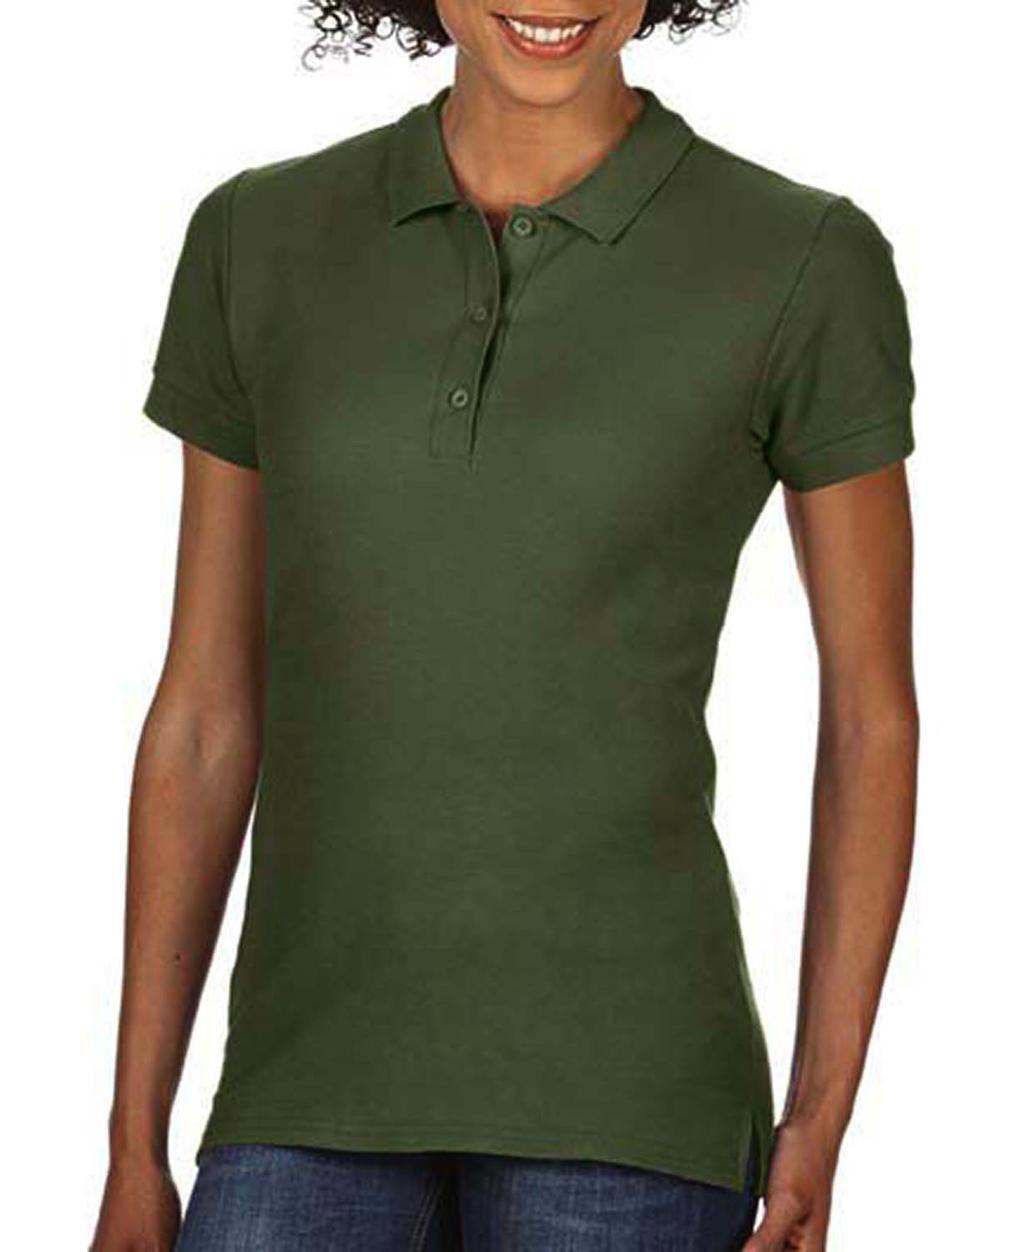  Premium Cotton Ladies Double Piqu? Polo in Farbe Military Green